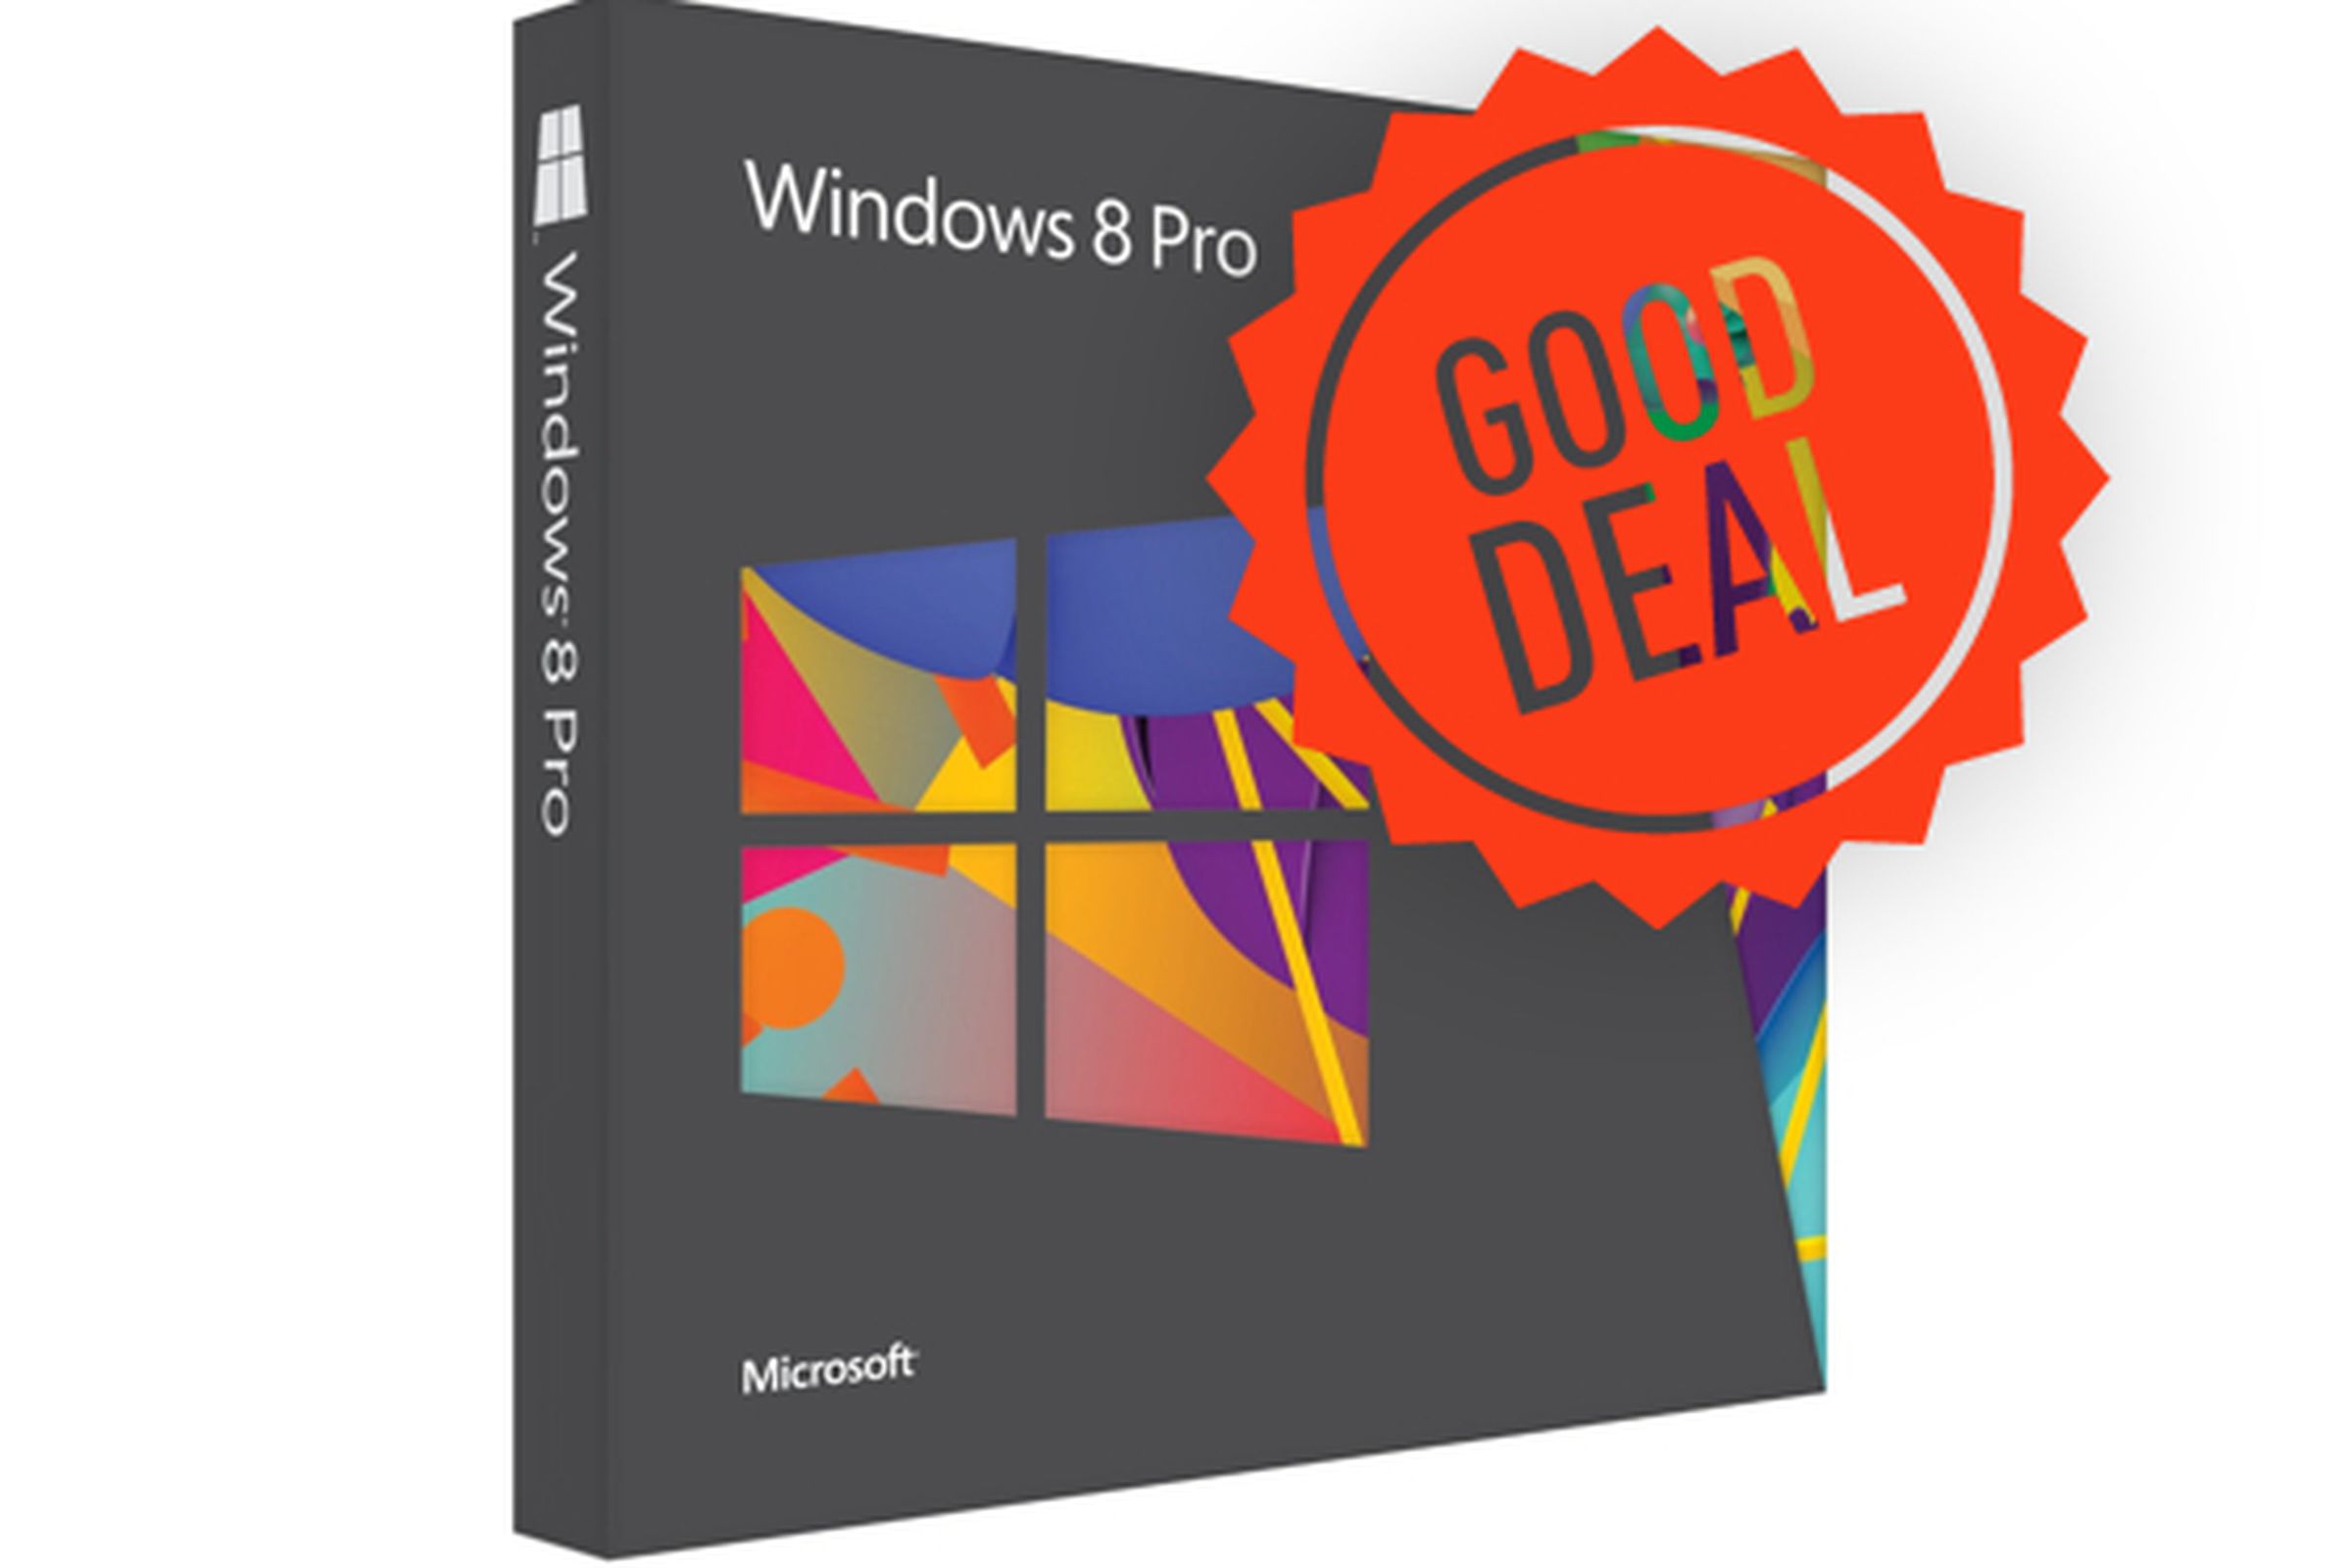 Windows 8 Good Deal